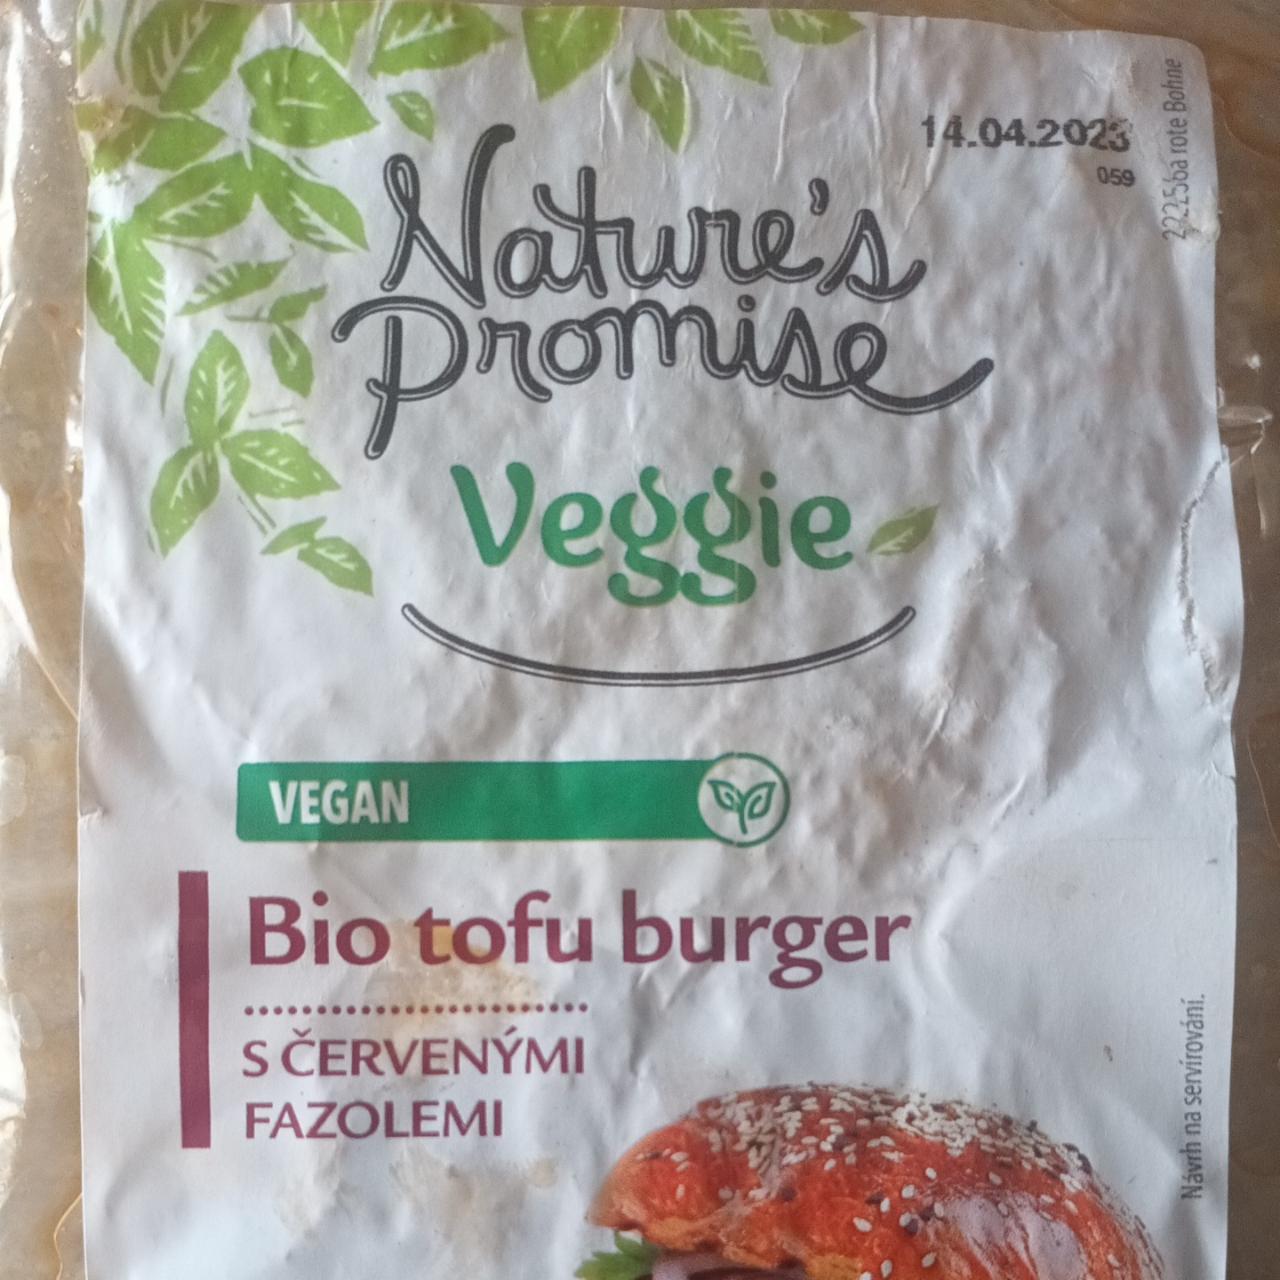 Fotografie - Bio tofu burger s červenými fazolemi Nature's Promise